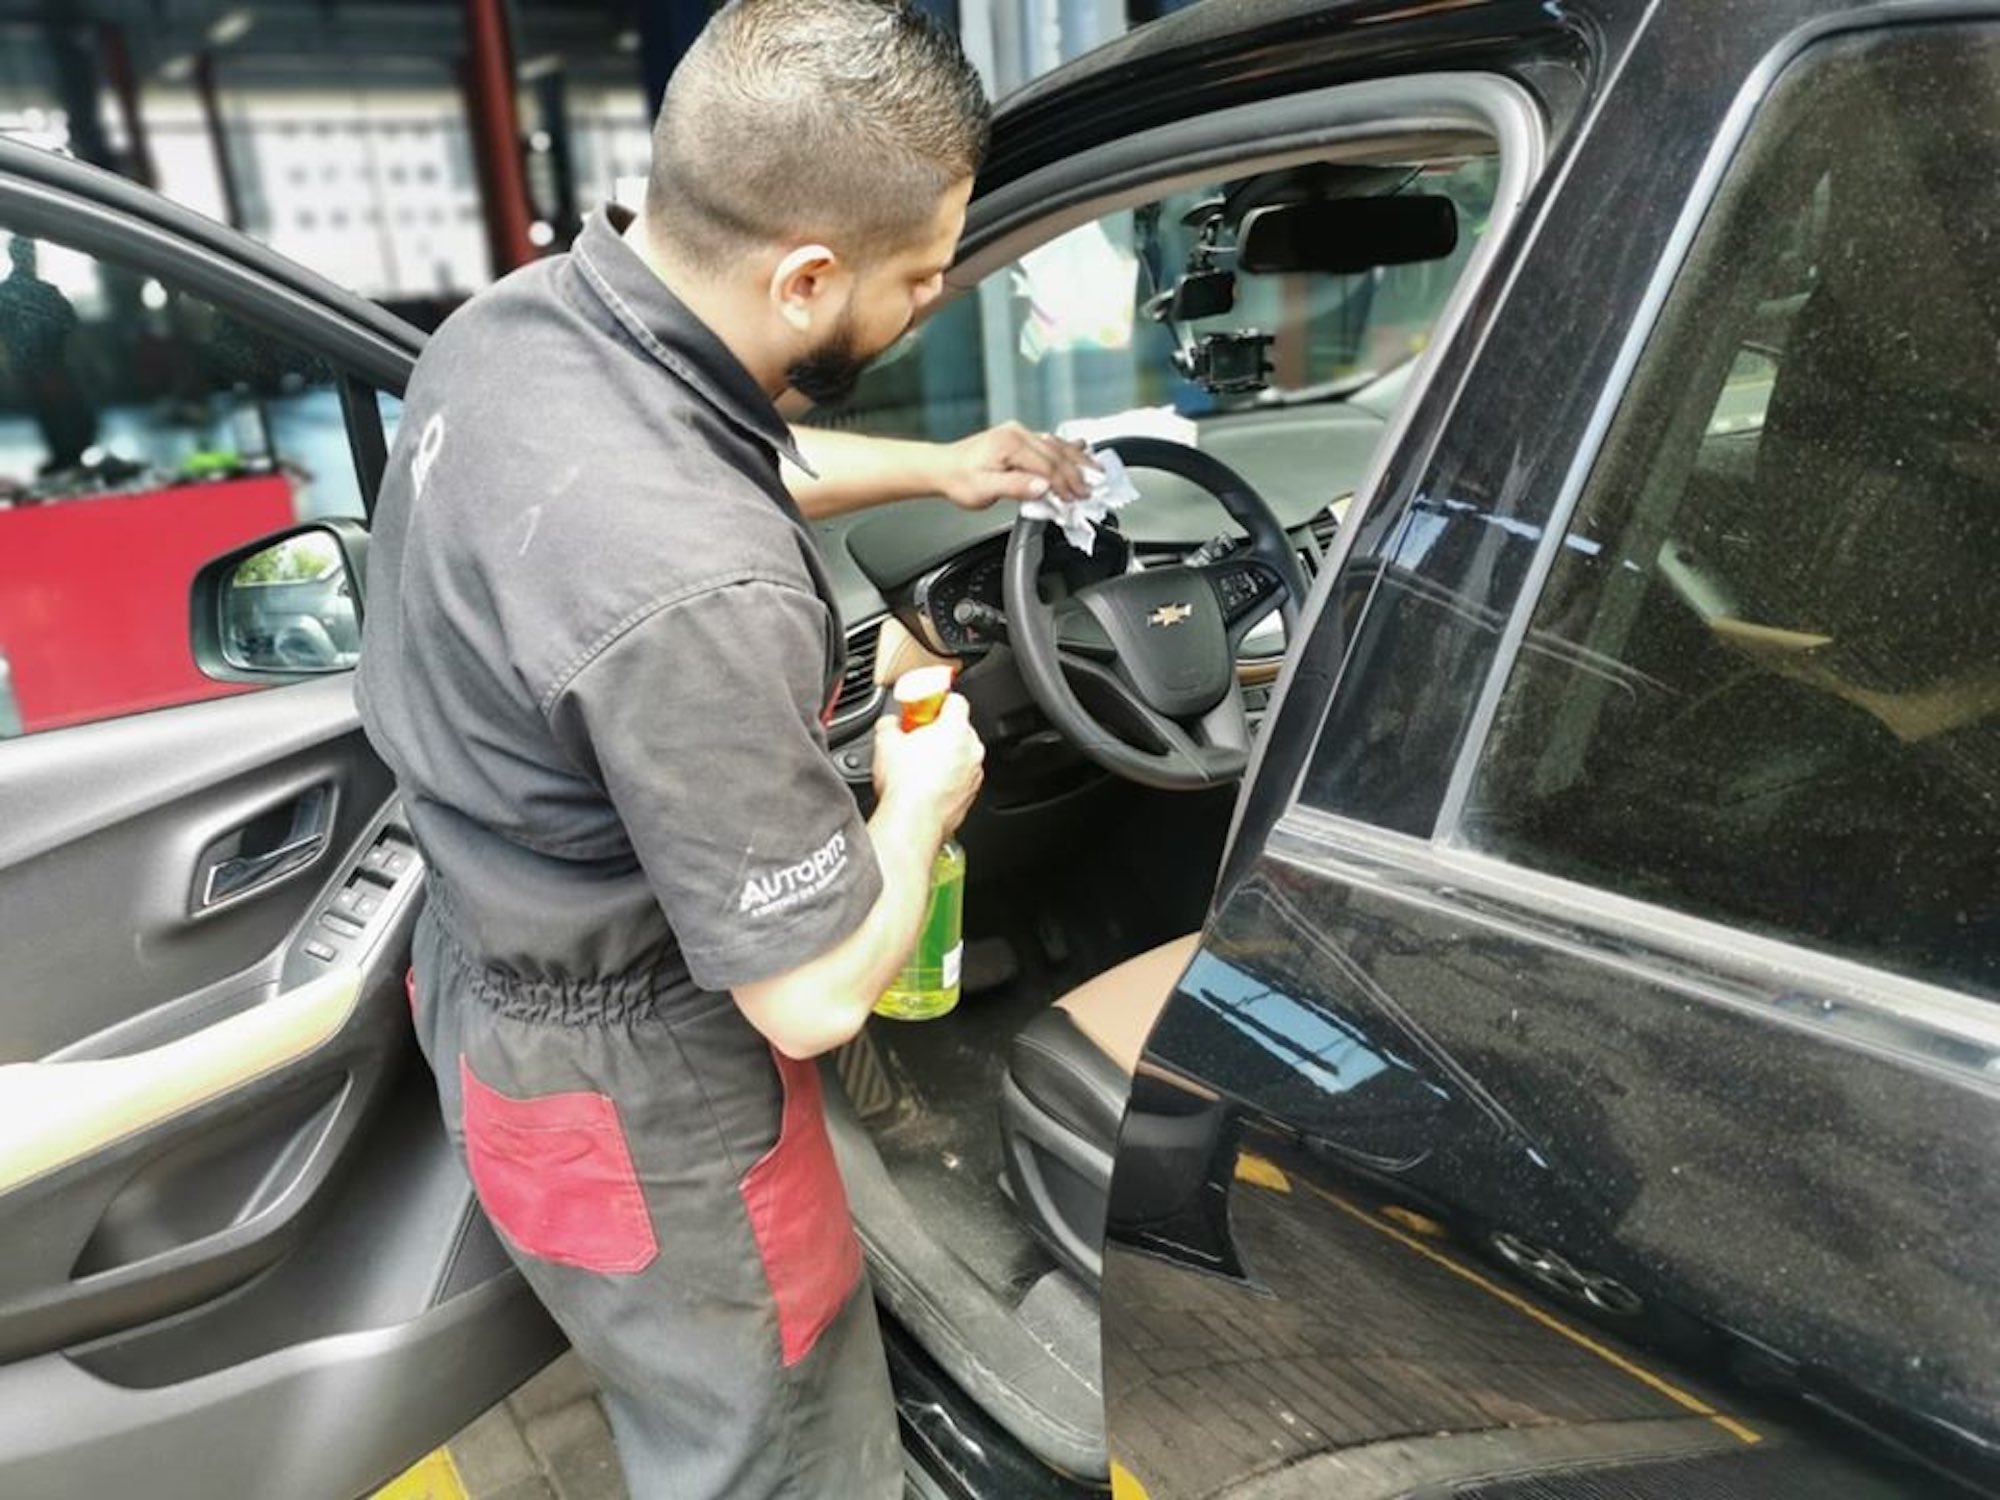 Autopits ofrece servicios especiales para que conductores no salgan a reparar sus automóviles